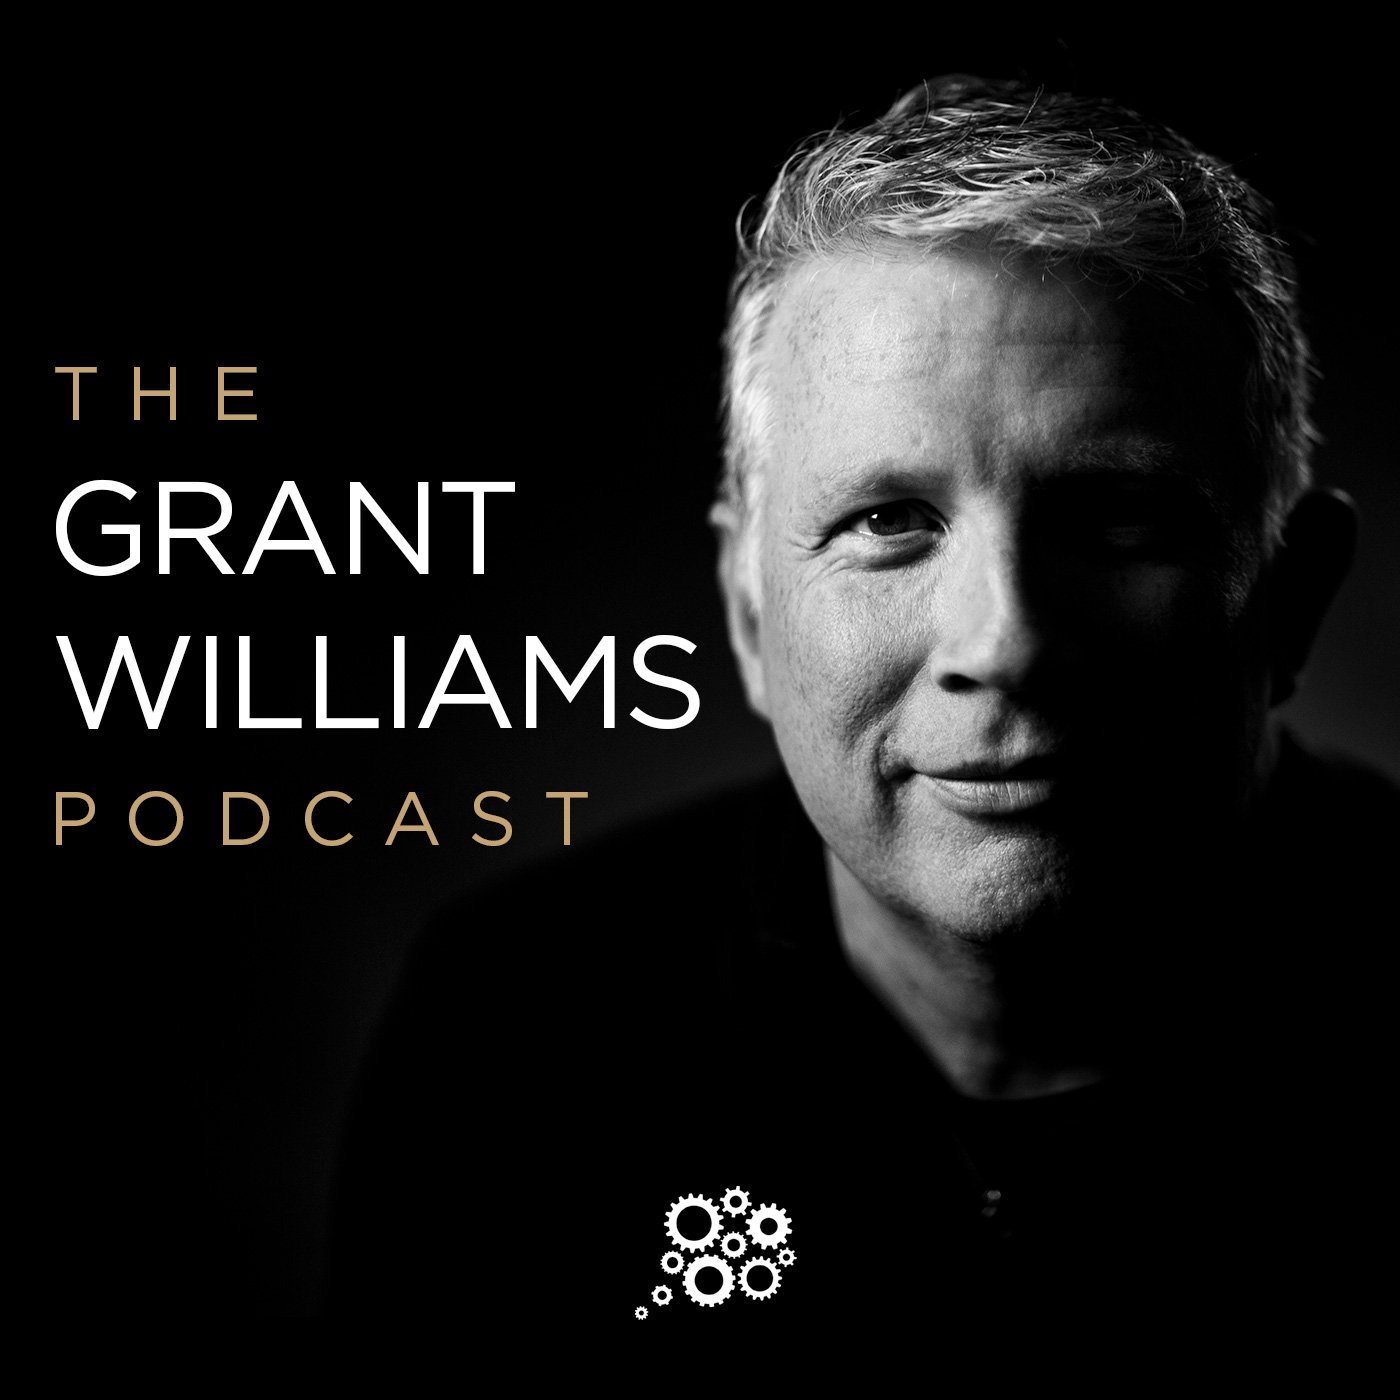 The Grant Williams Podcast: Danielle DiMartino Booth